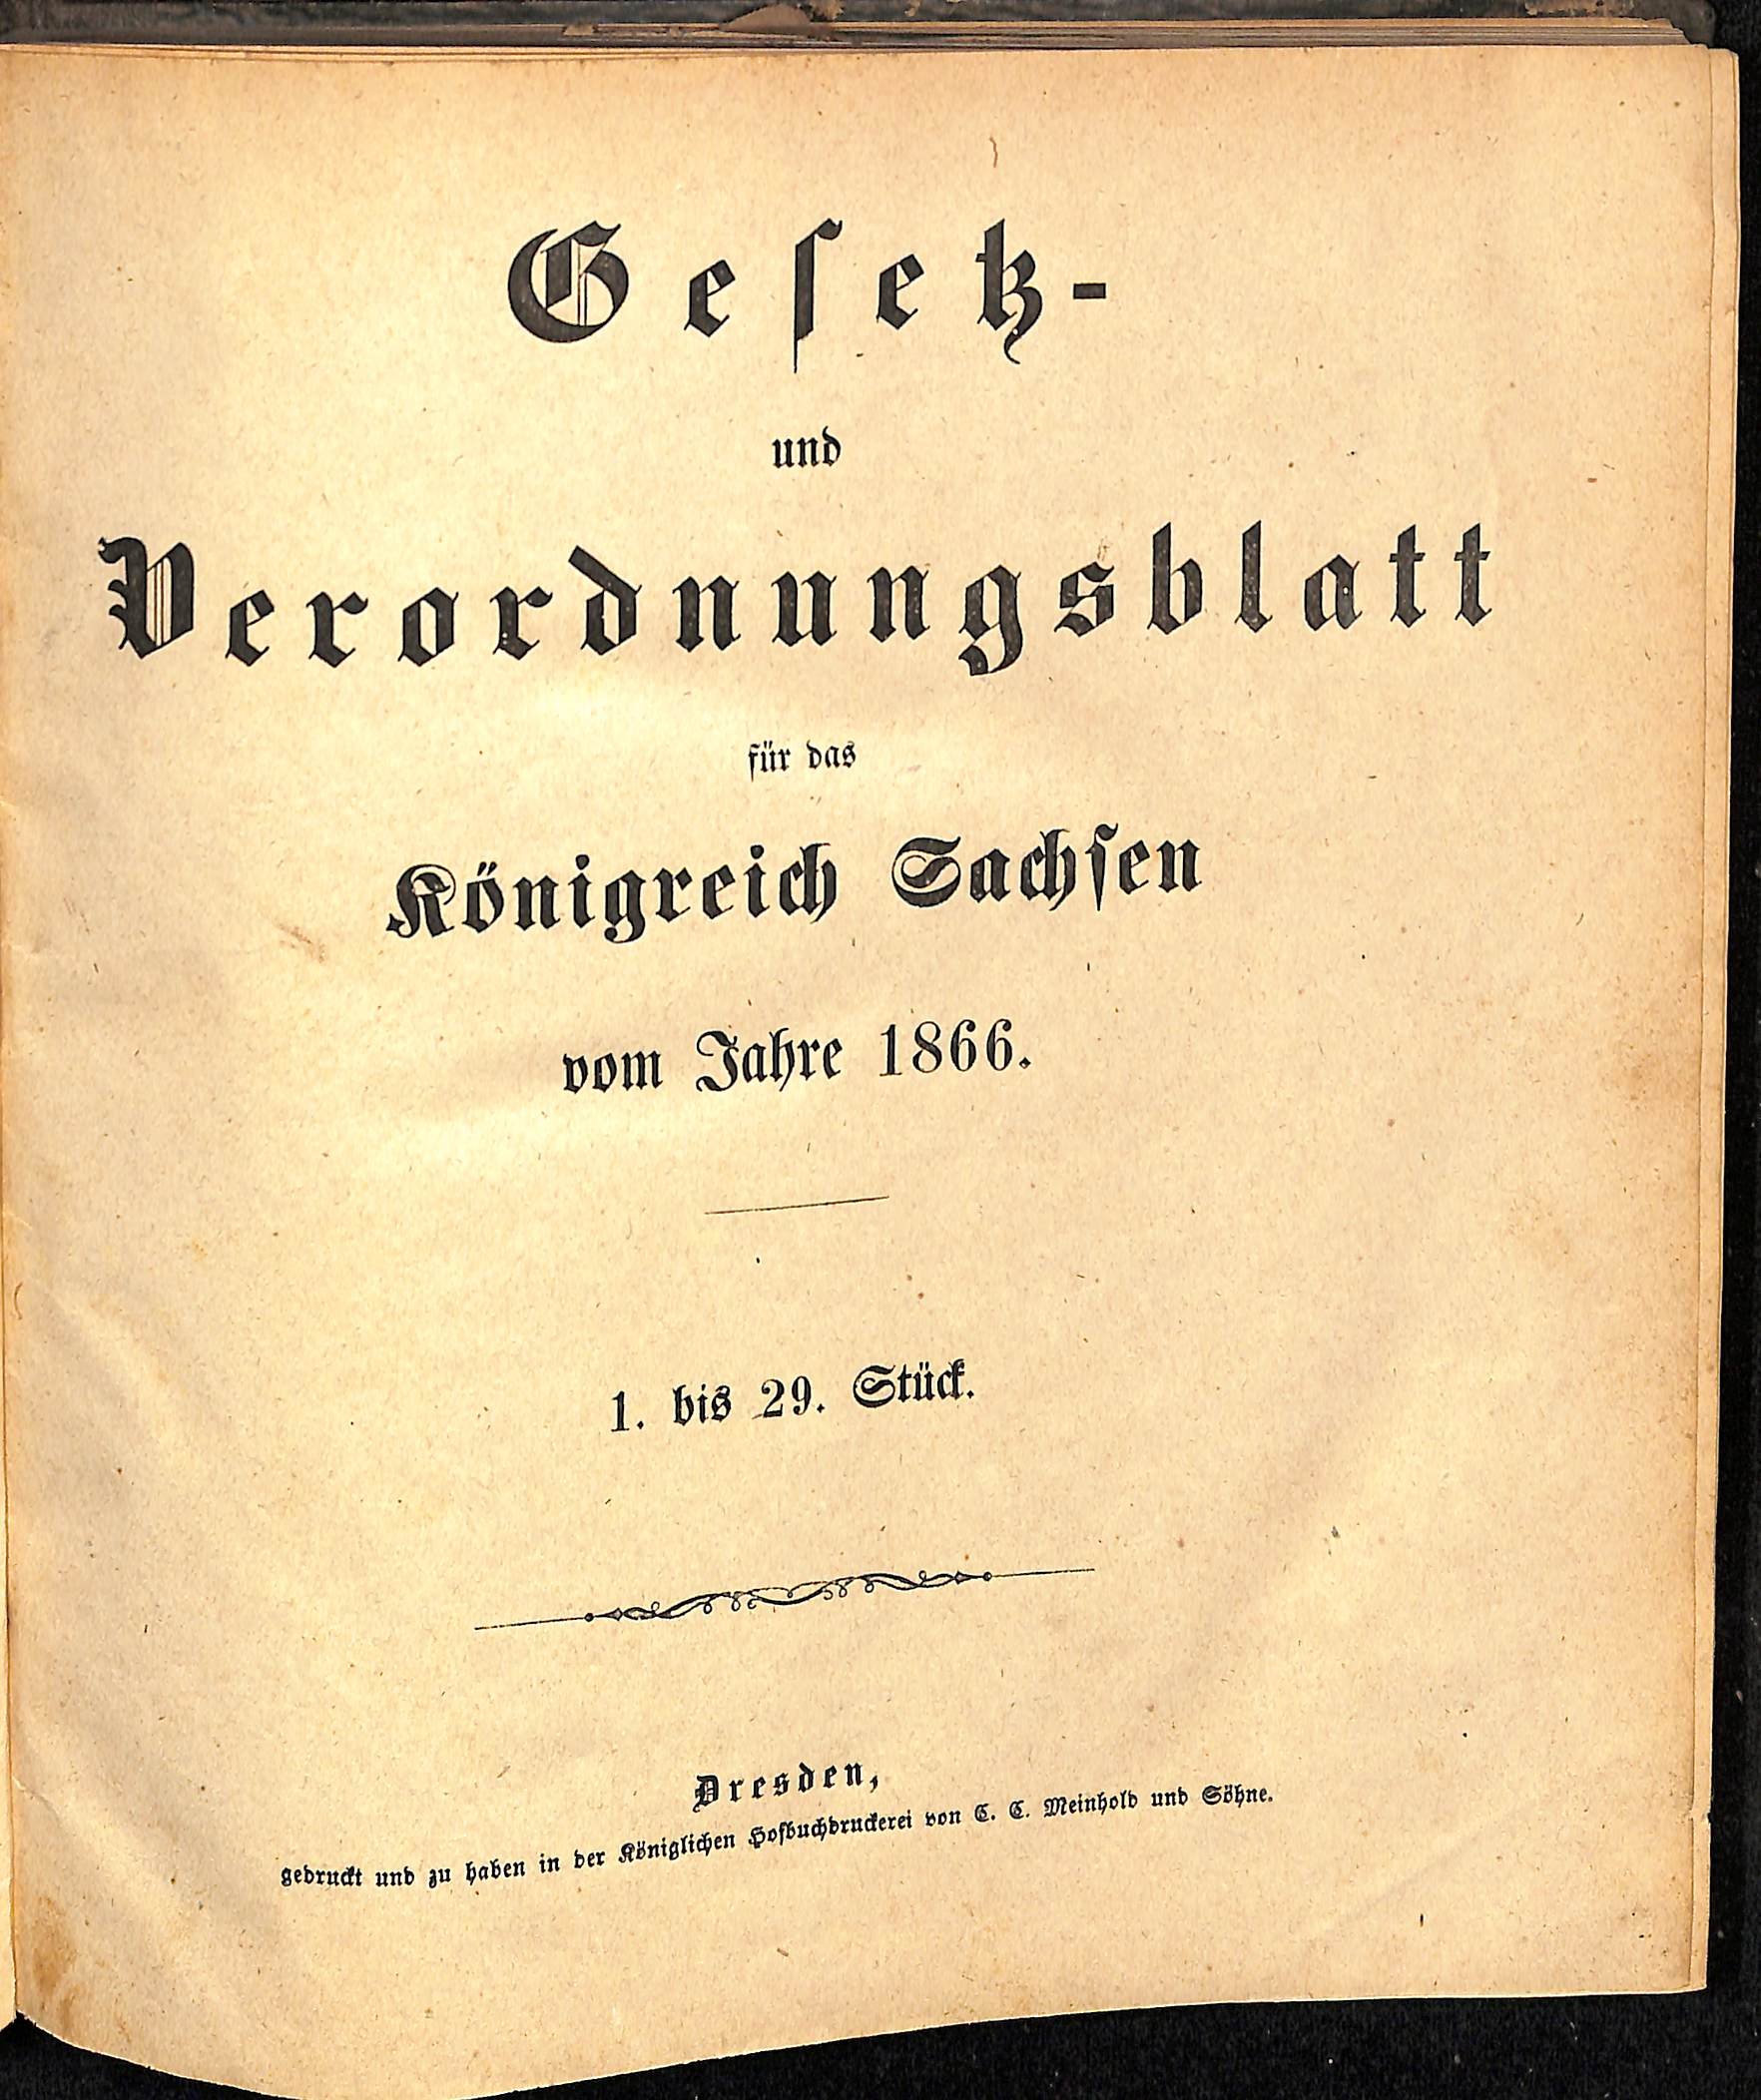 Gesetz- und Verordnungsblatt für das Königreich Sachsen vom Jahre 1866 (HEIMATWELTEN Zwönitz - Raritätensammlung Bruno Gebhardt CC BY-NC-SA)